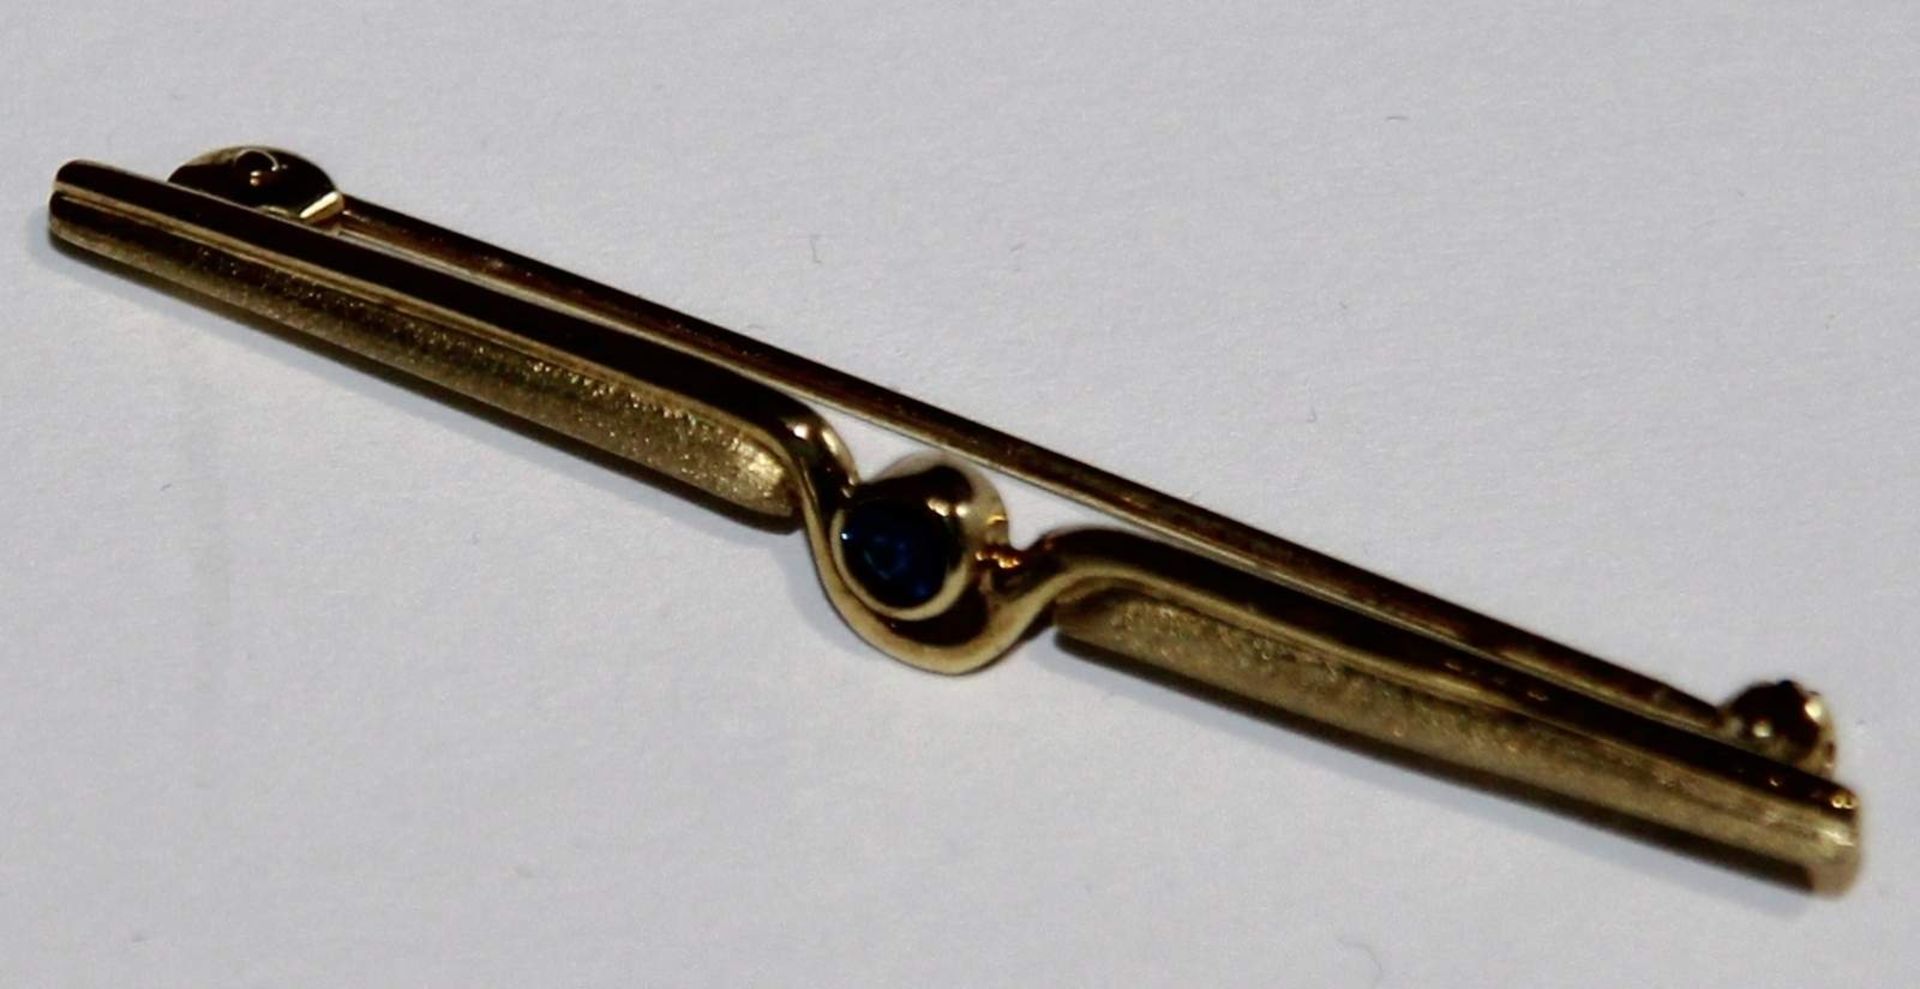 Nadel 333 Gold
Stabnadel 333 Gold mit Safir in Zargenfassung, Länge ca. 4,7cm, Gewicht ca. 1,